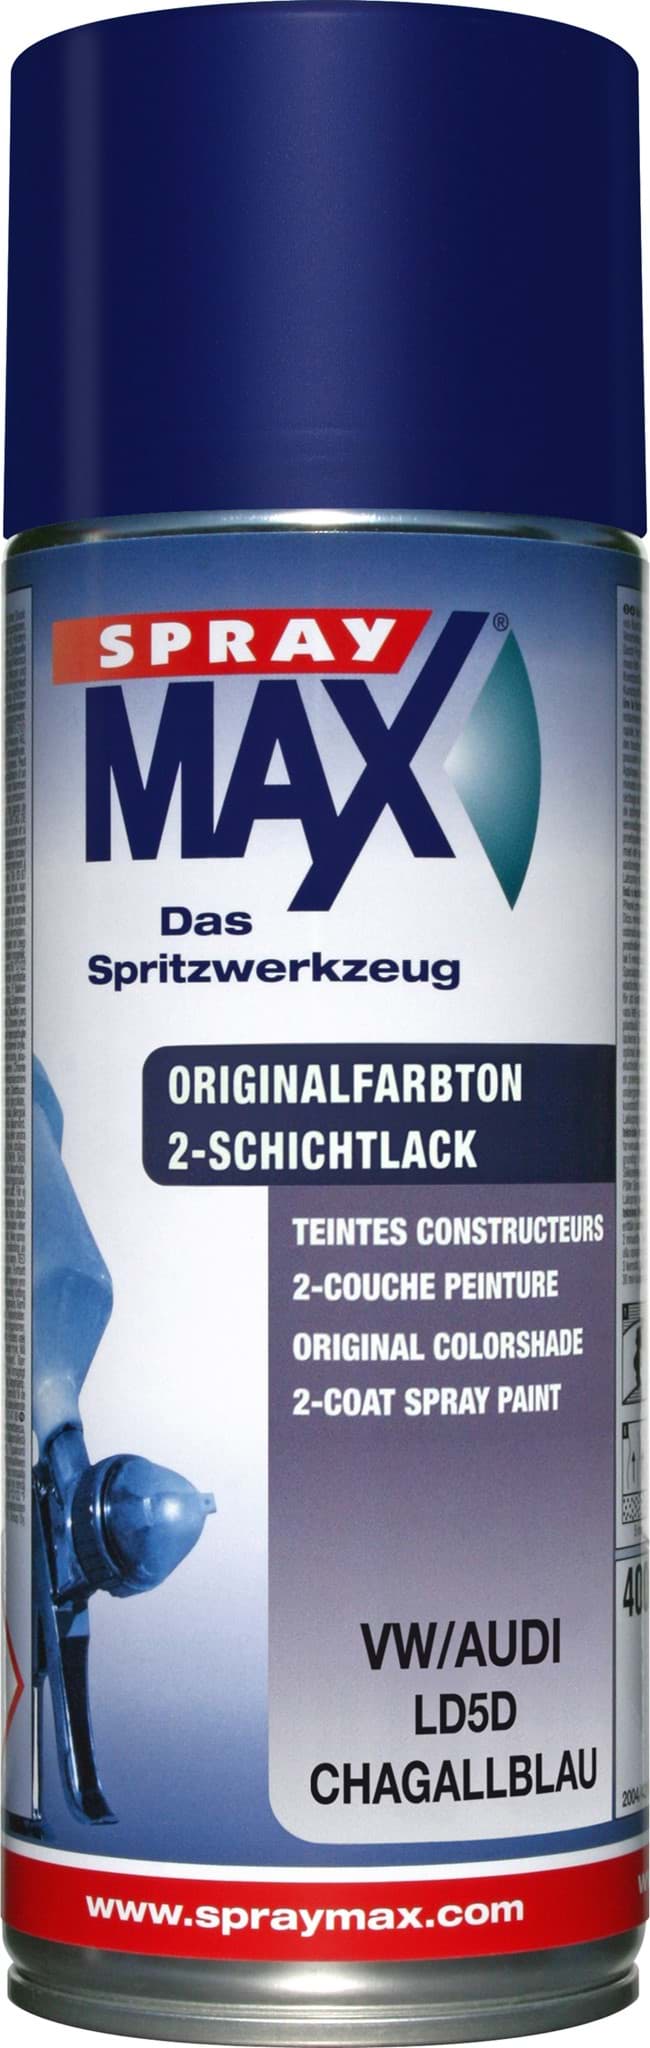 Obraz SprayMax Originalfarbton für VW LD5D chagallblau